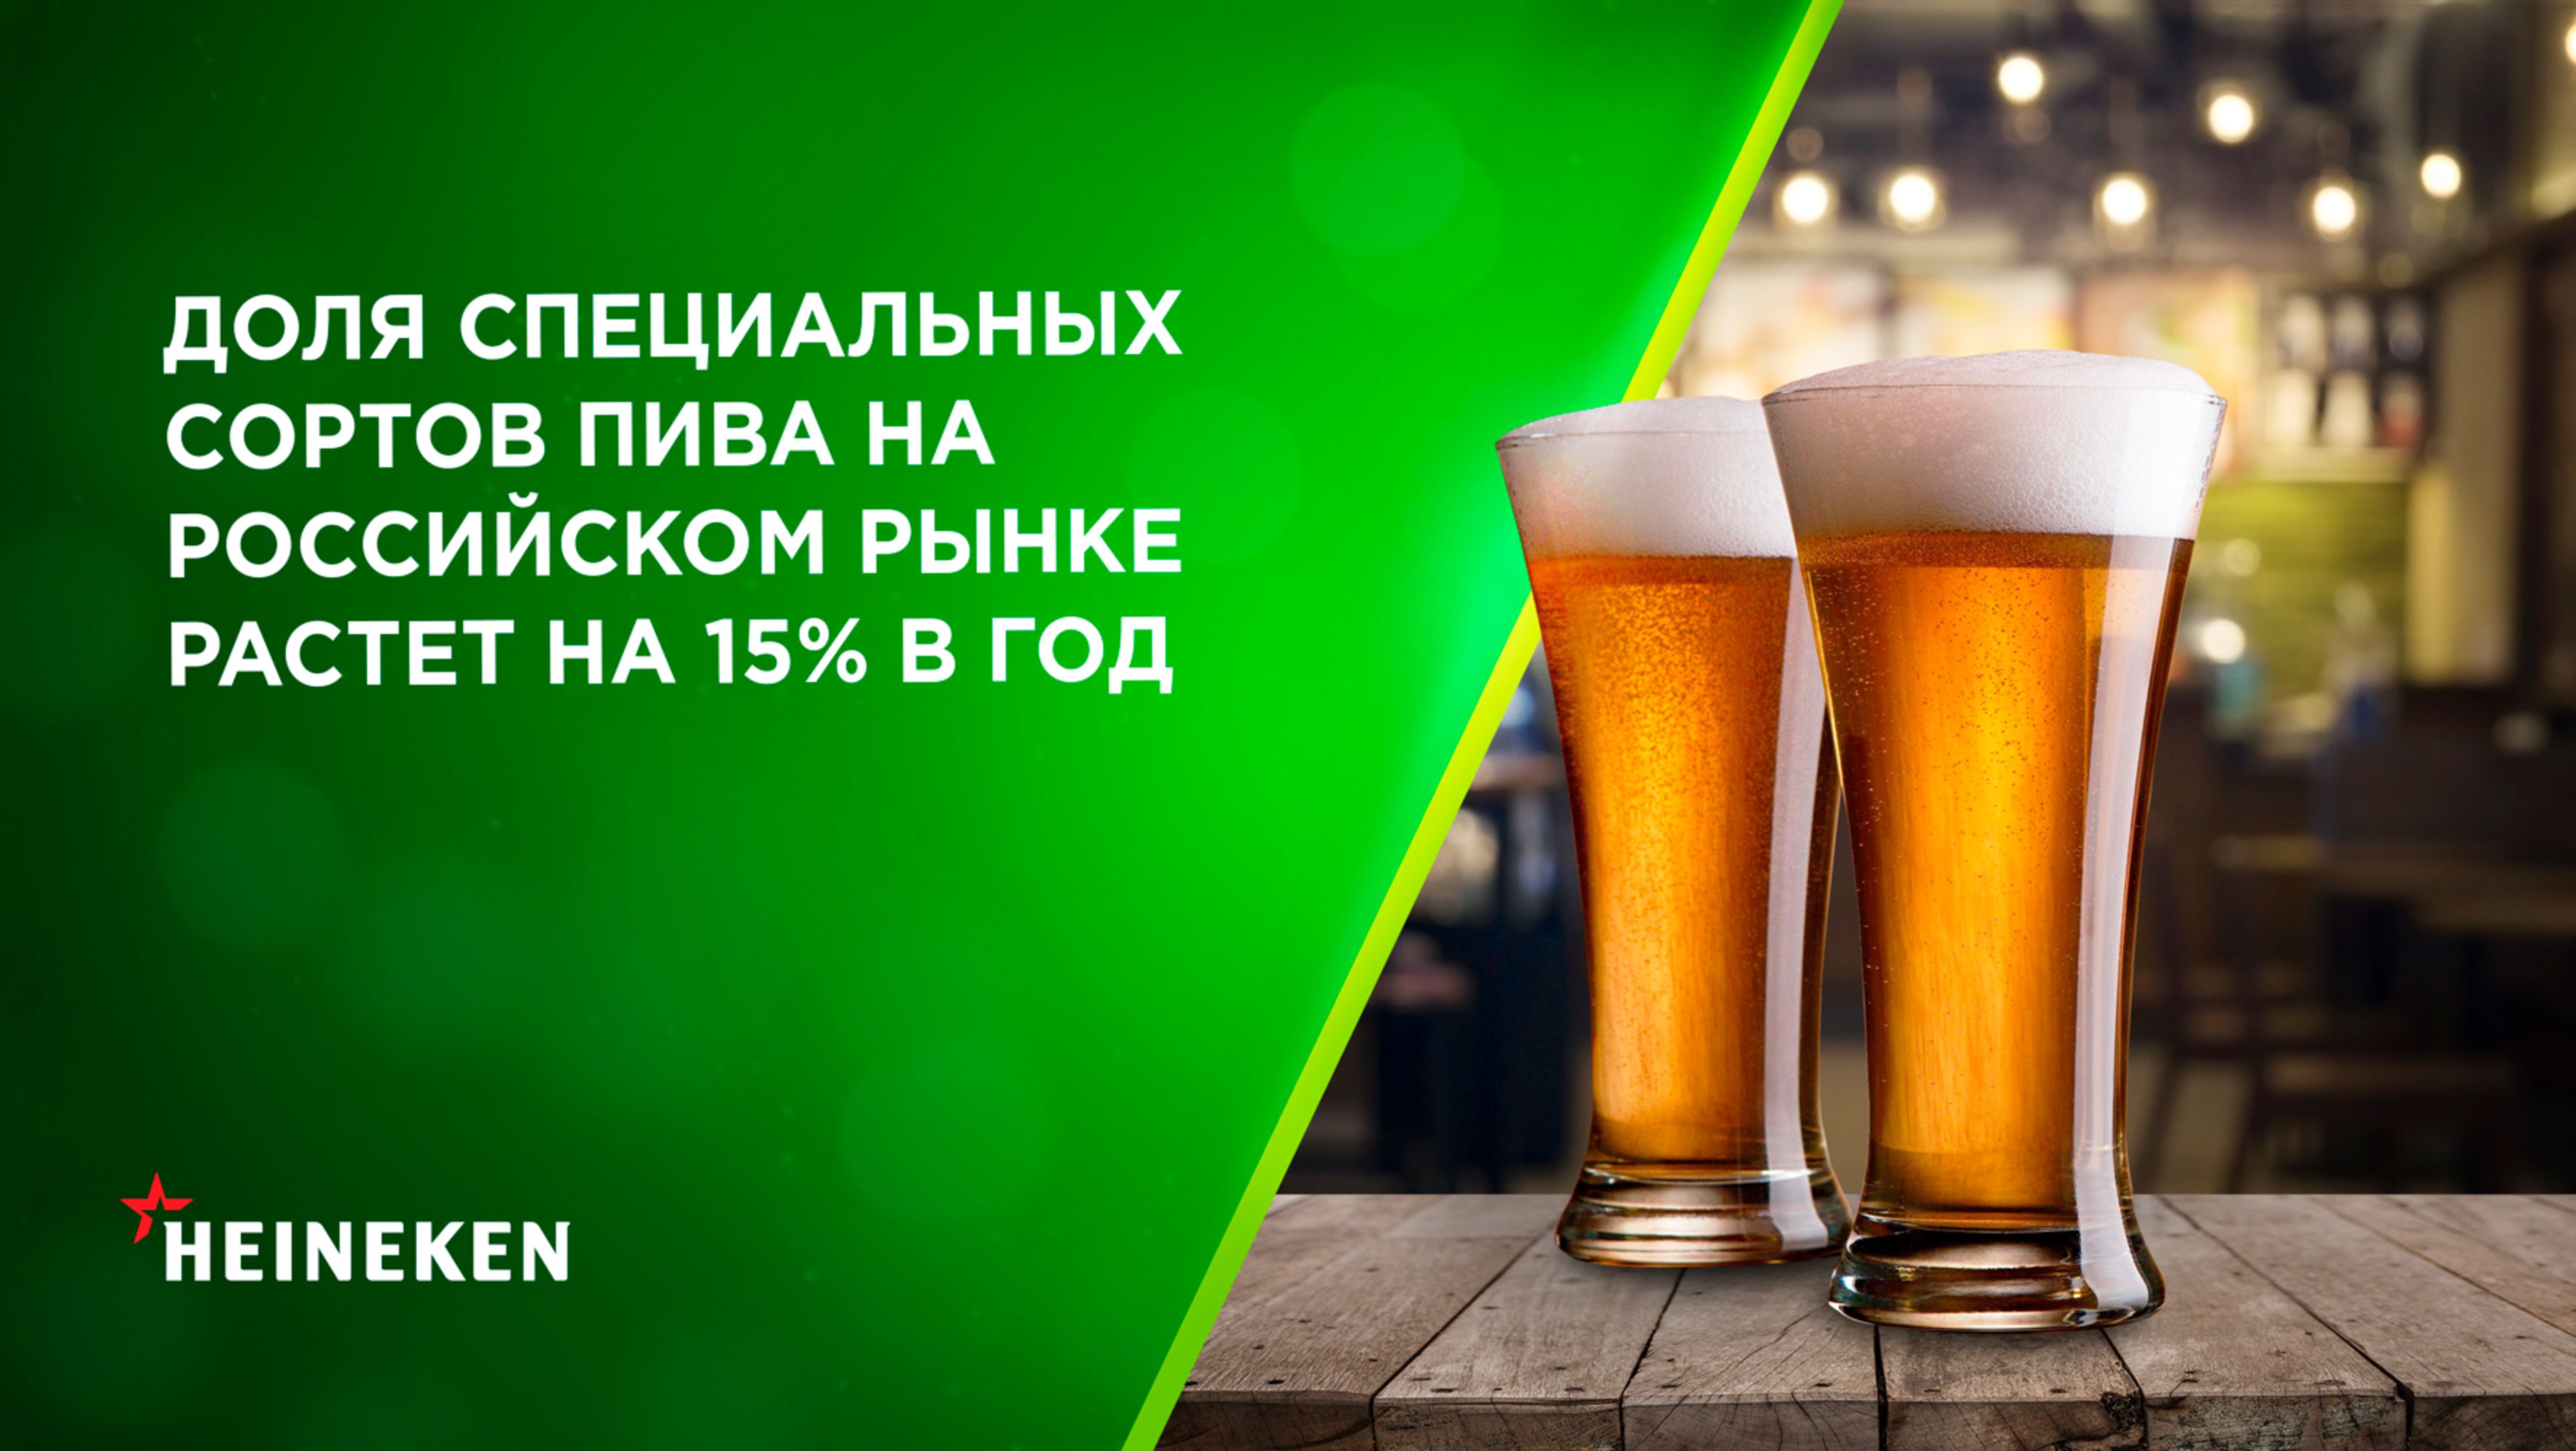 Доля специальных сортов пива на российском рынке растет на 15% в год